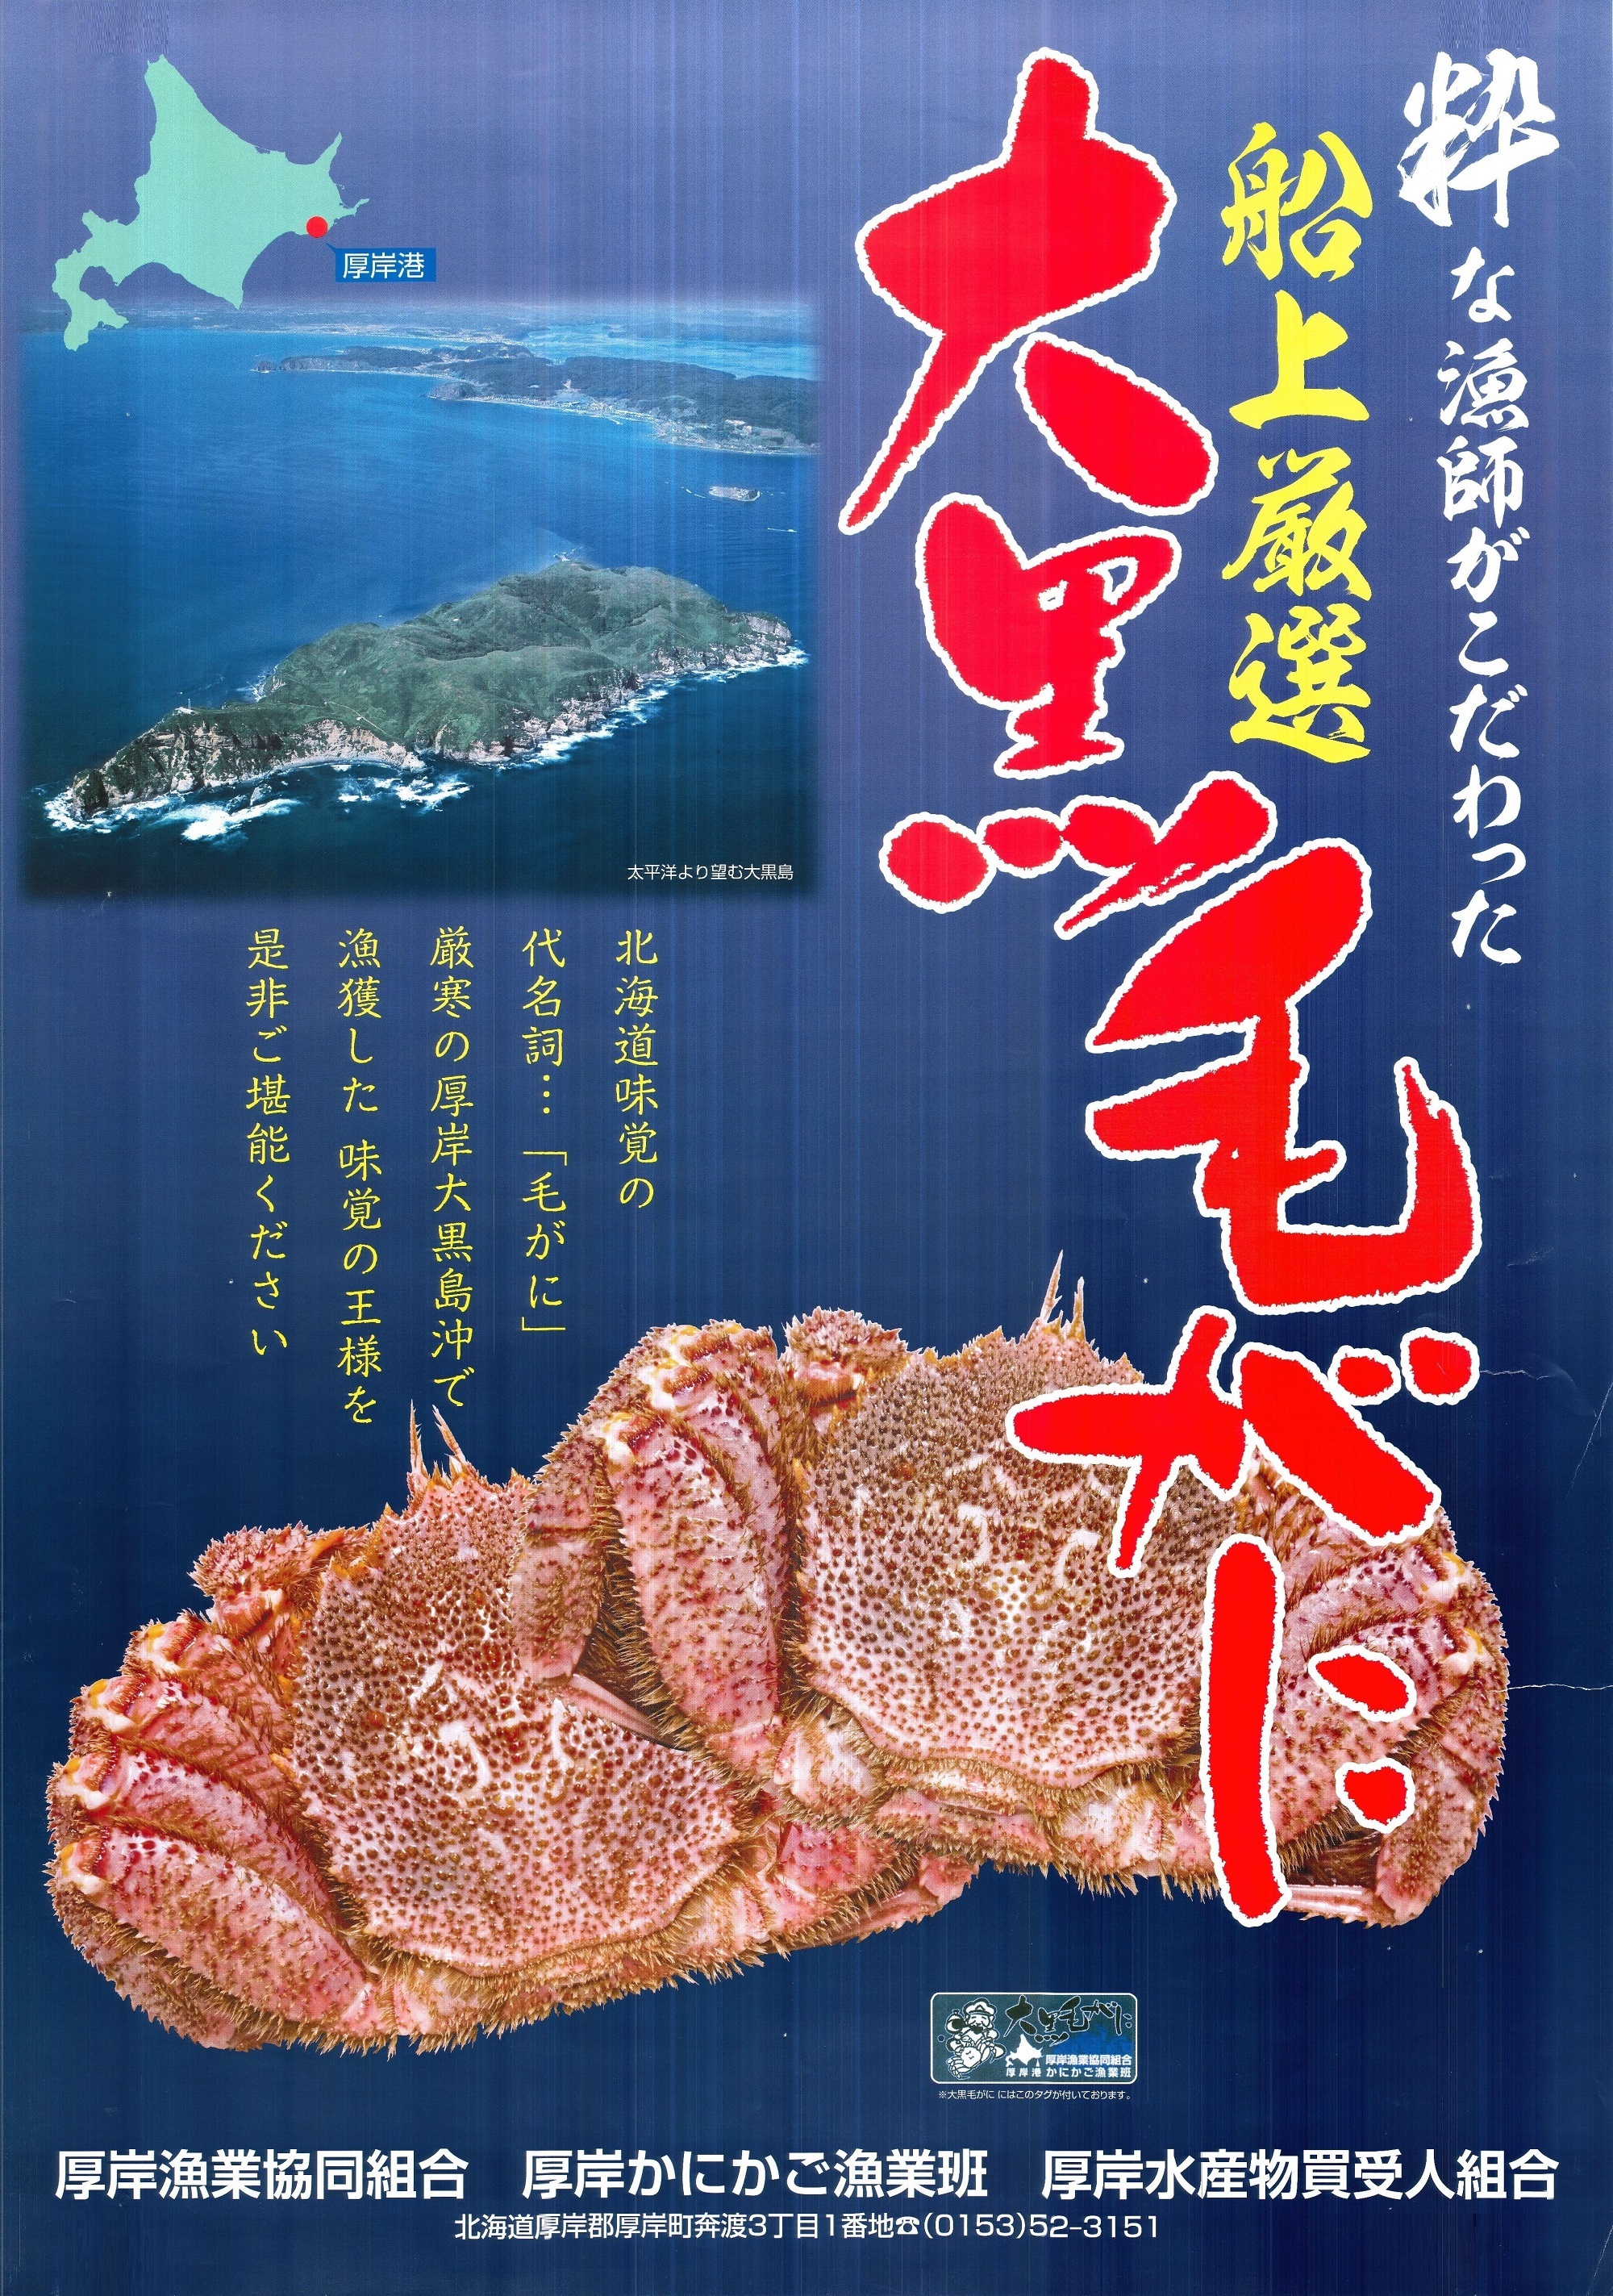 daikokukegani-poster.jpg